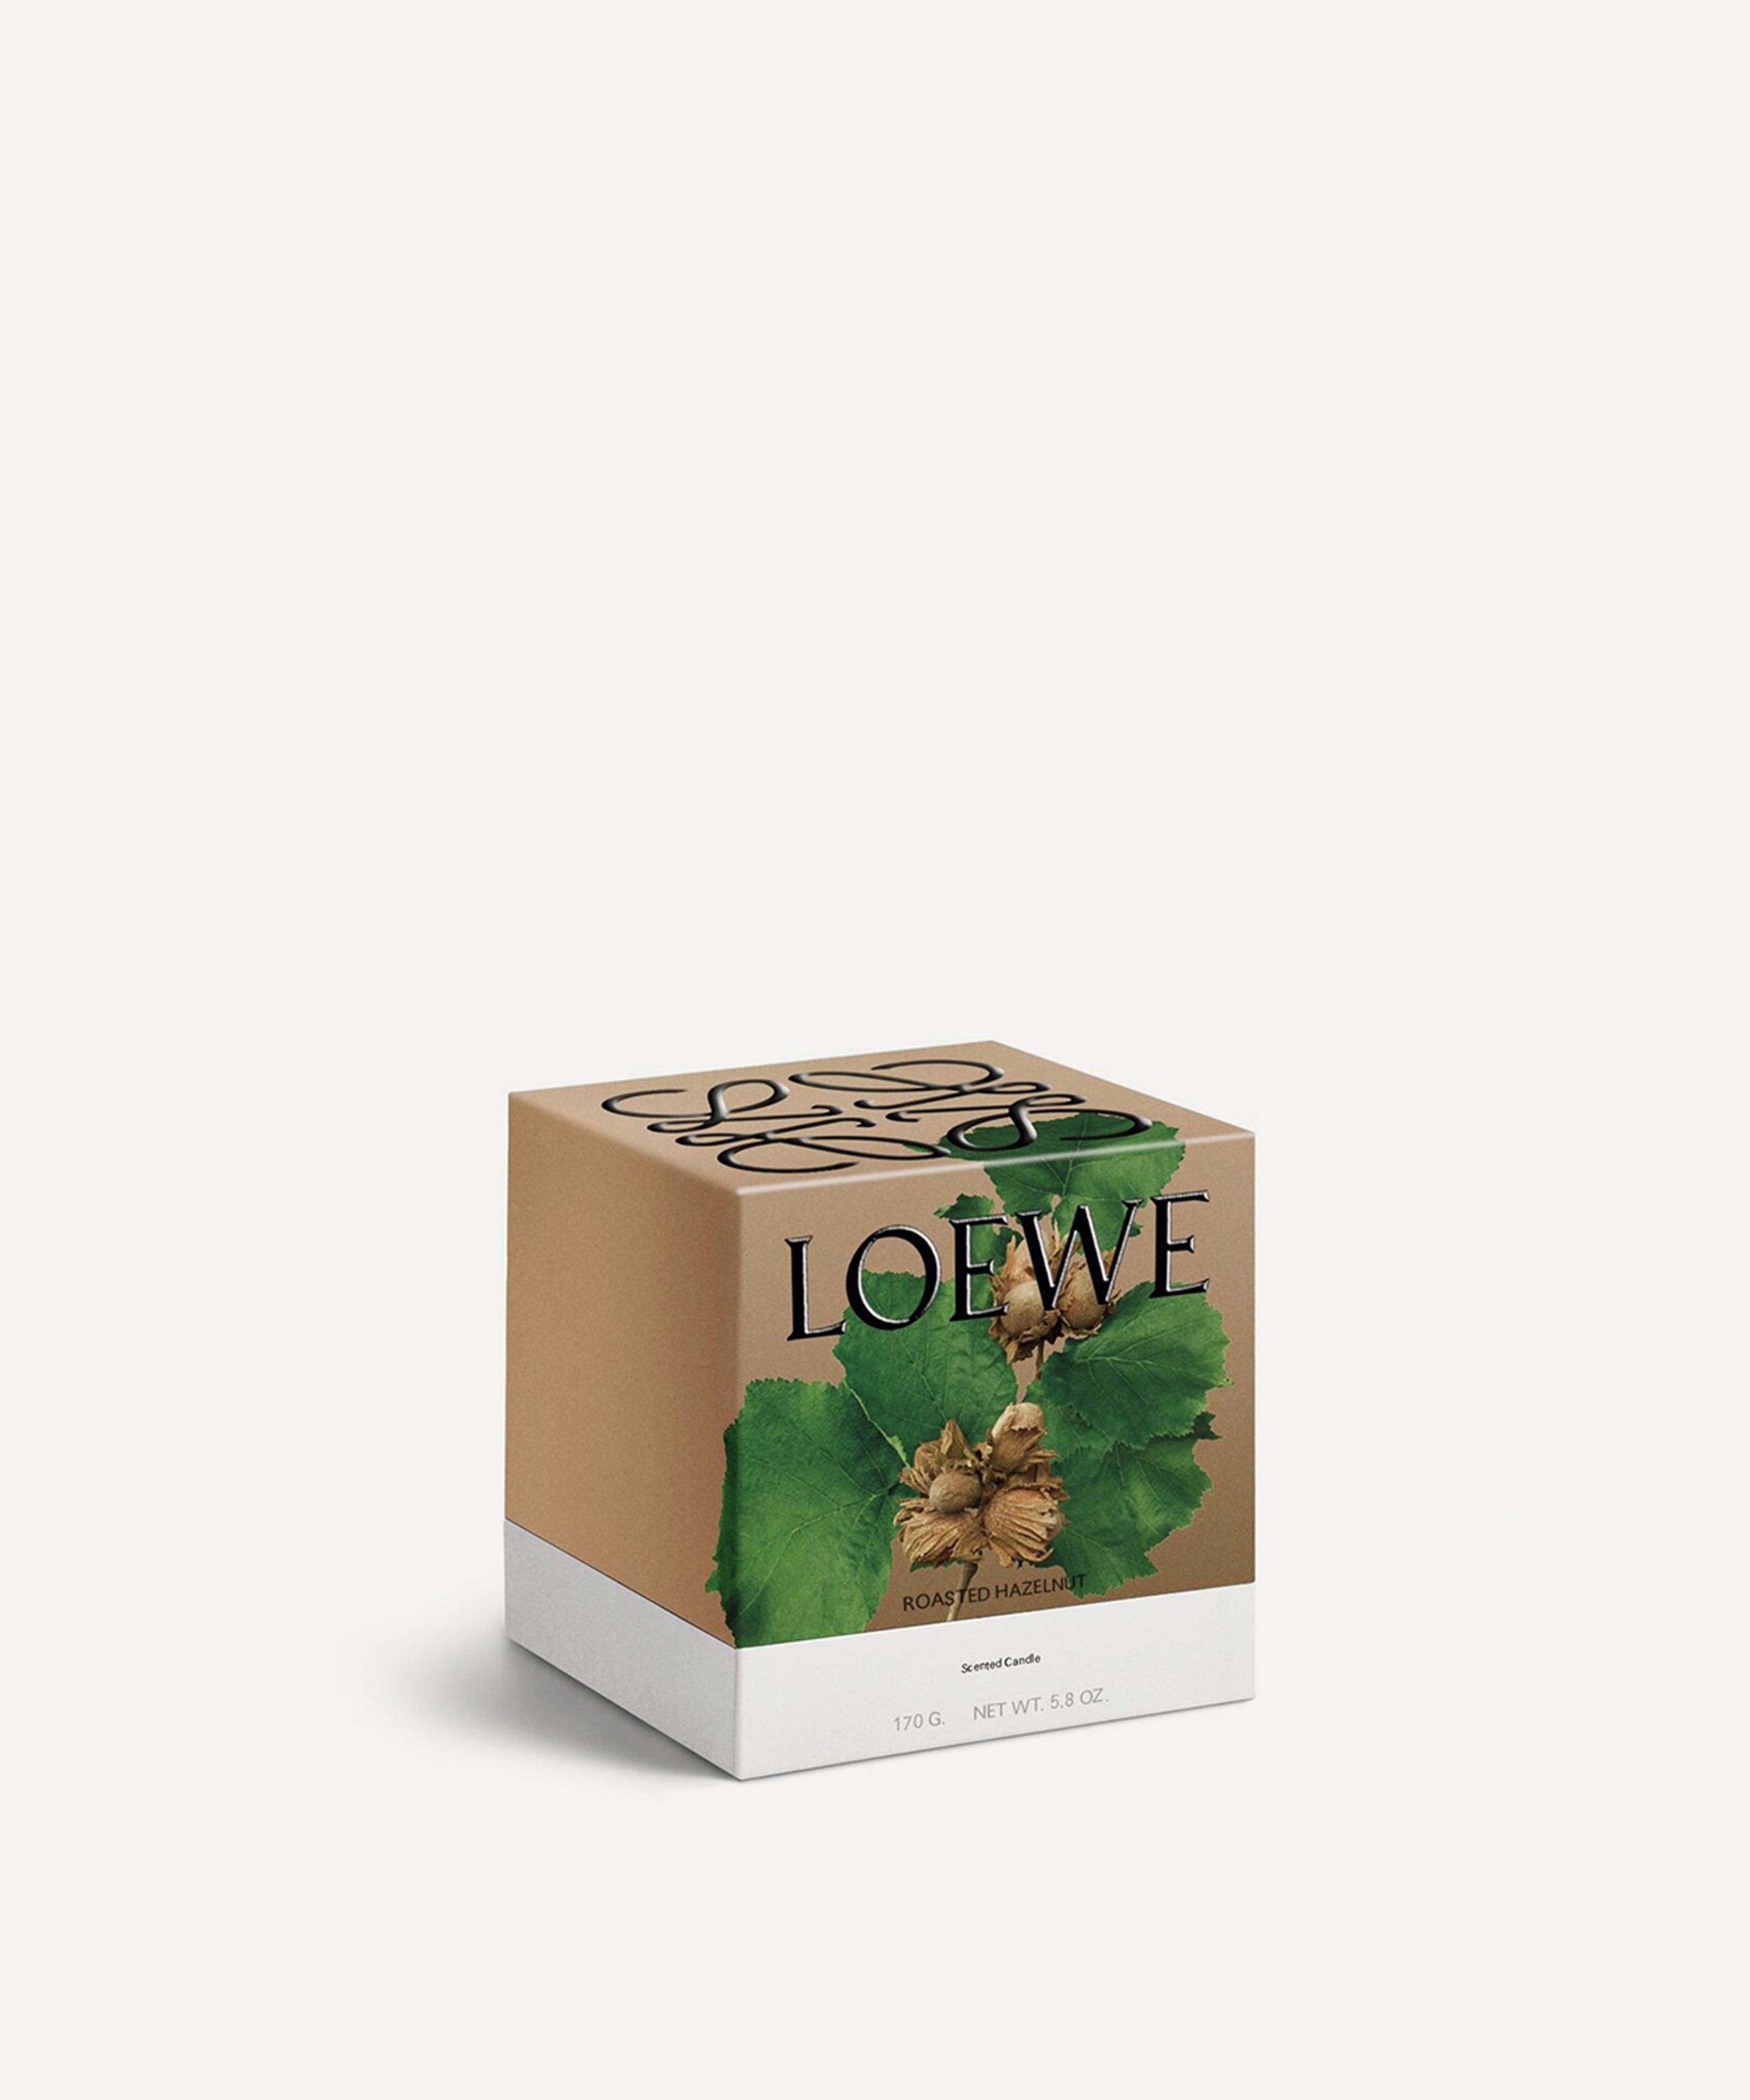 Loewe - Small Roasted Hazelnut Candle 170g image number 2